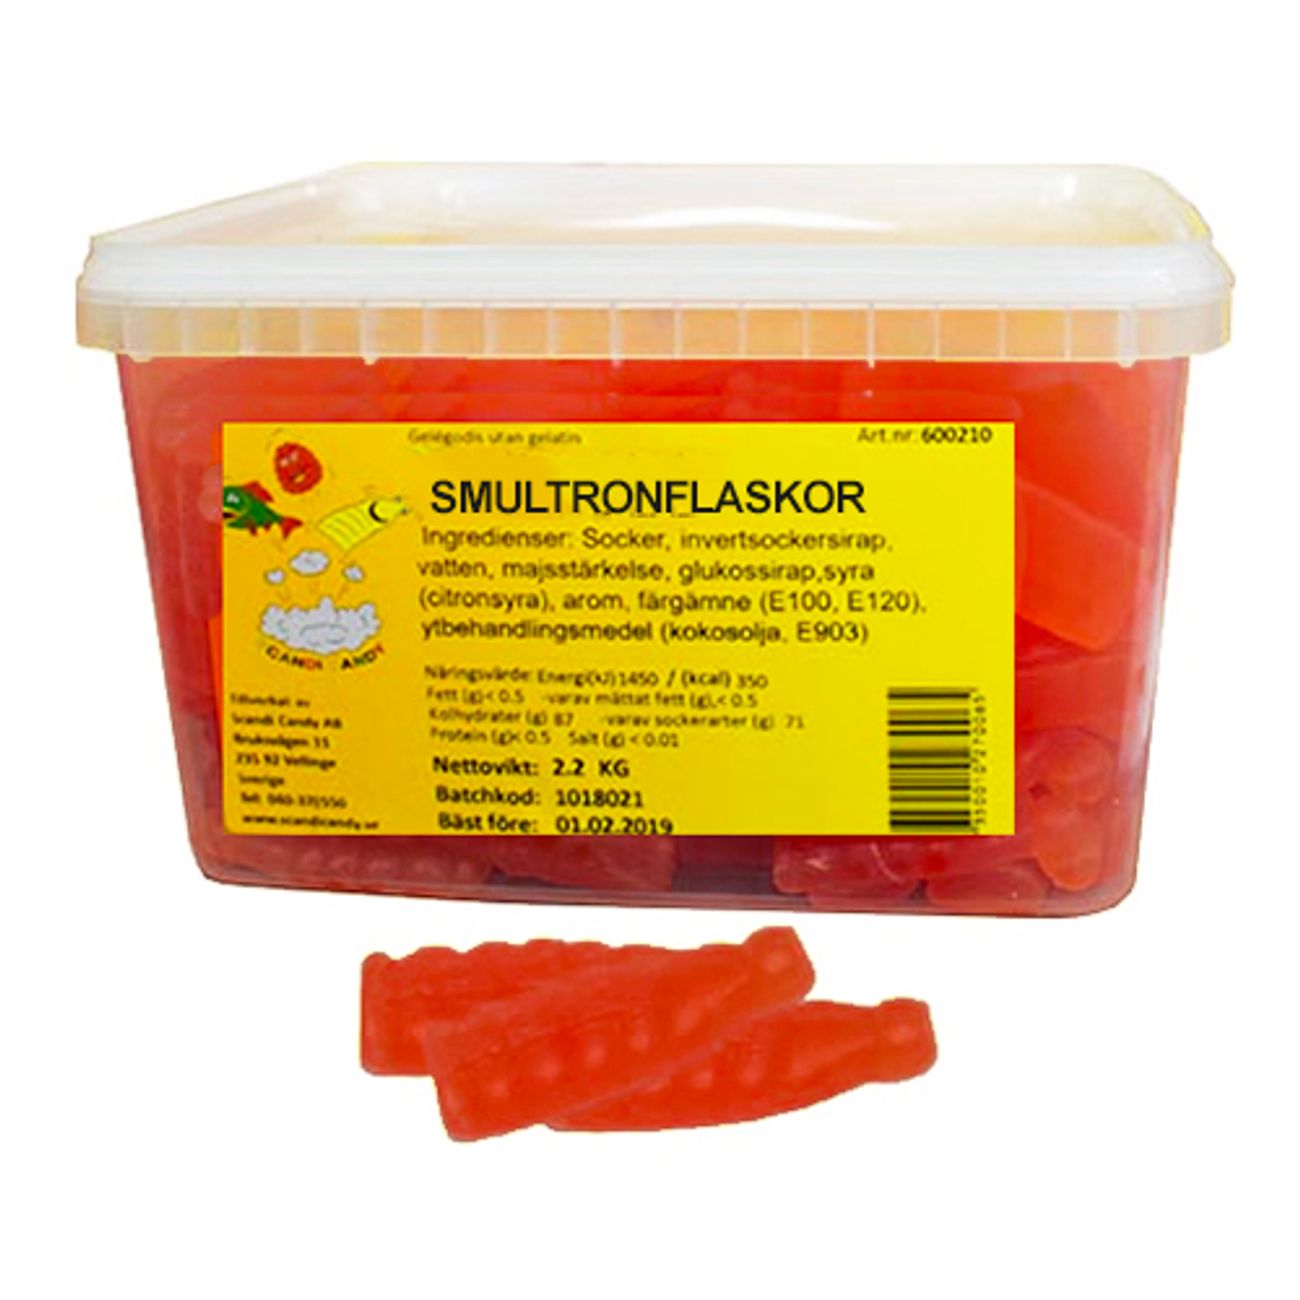 smultronflaskor-storpack-77150-1